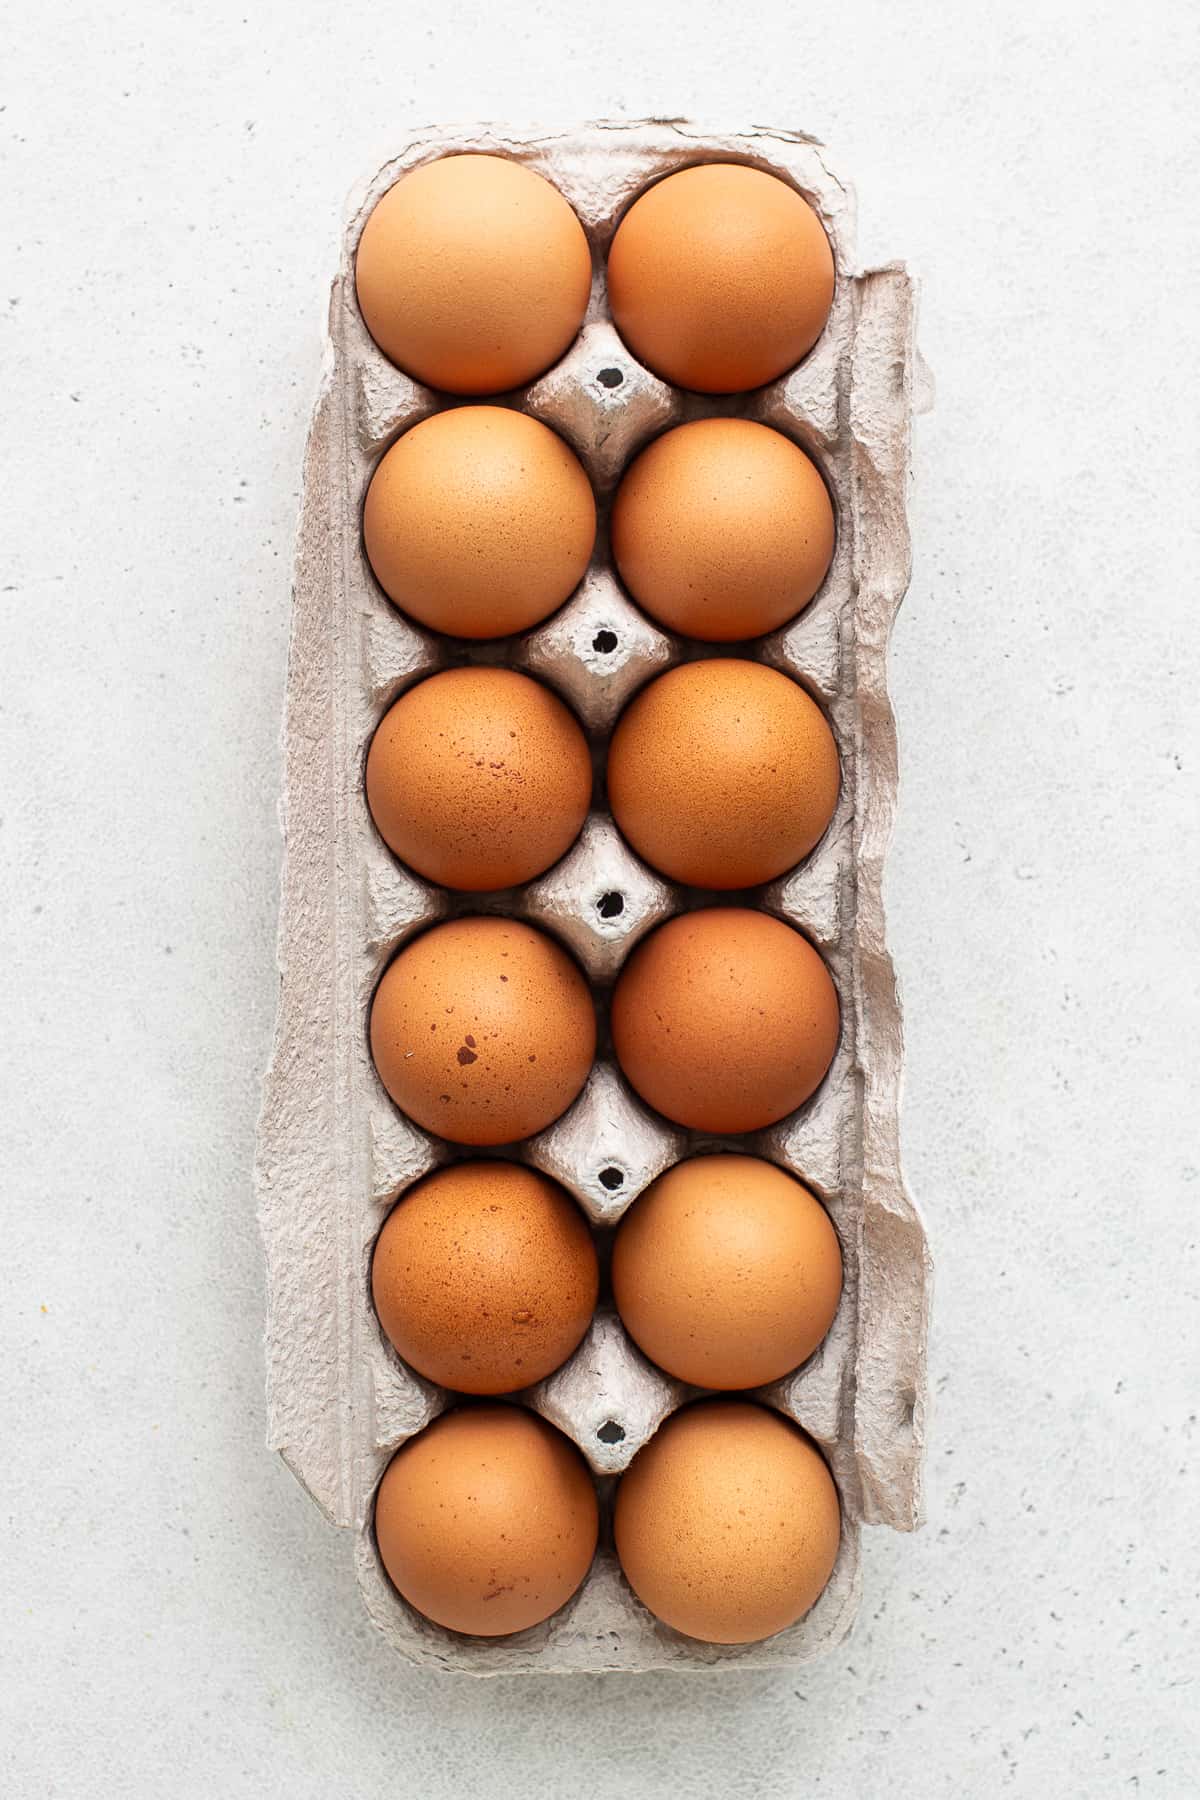 Ein Dutzend Eier in einem Eierkarton.